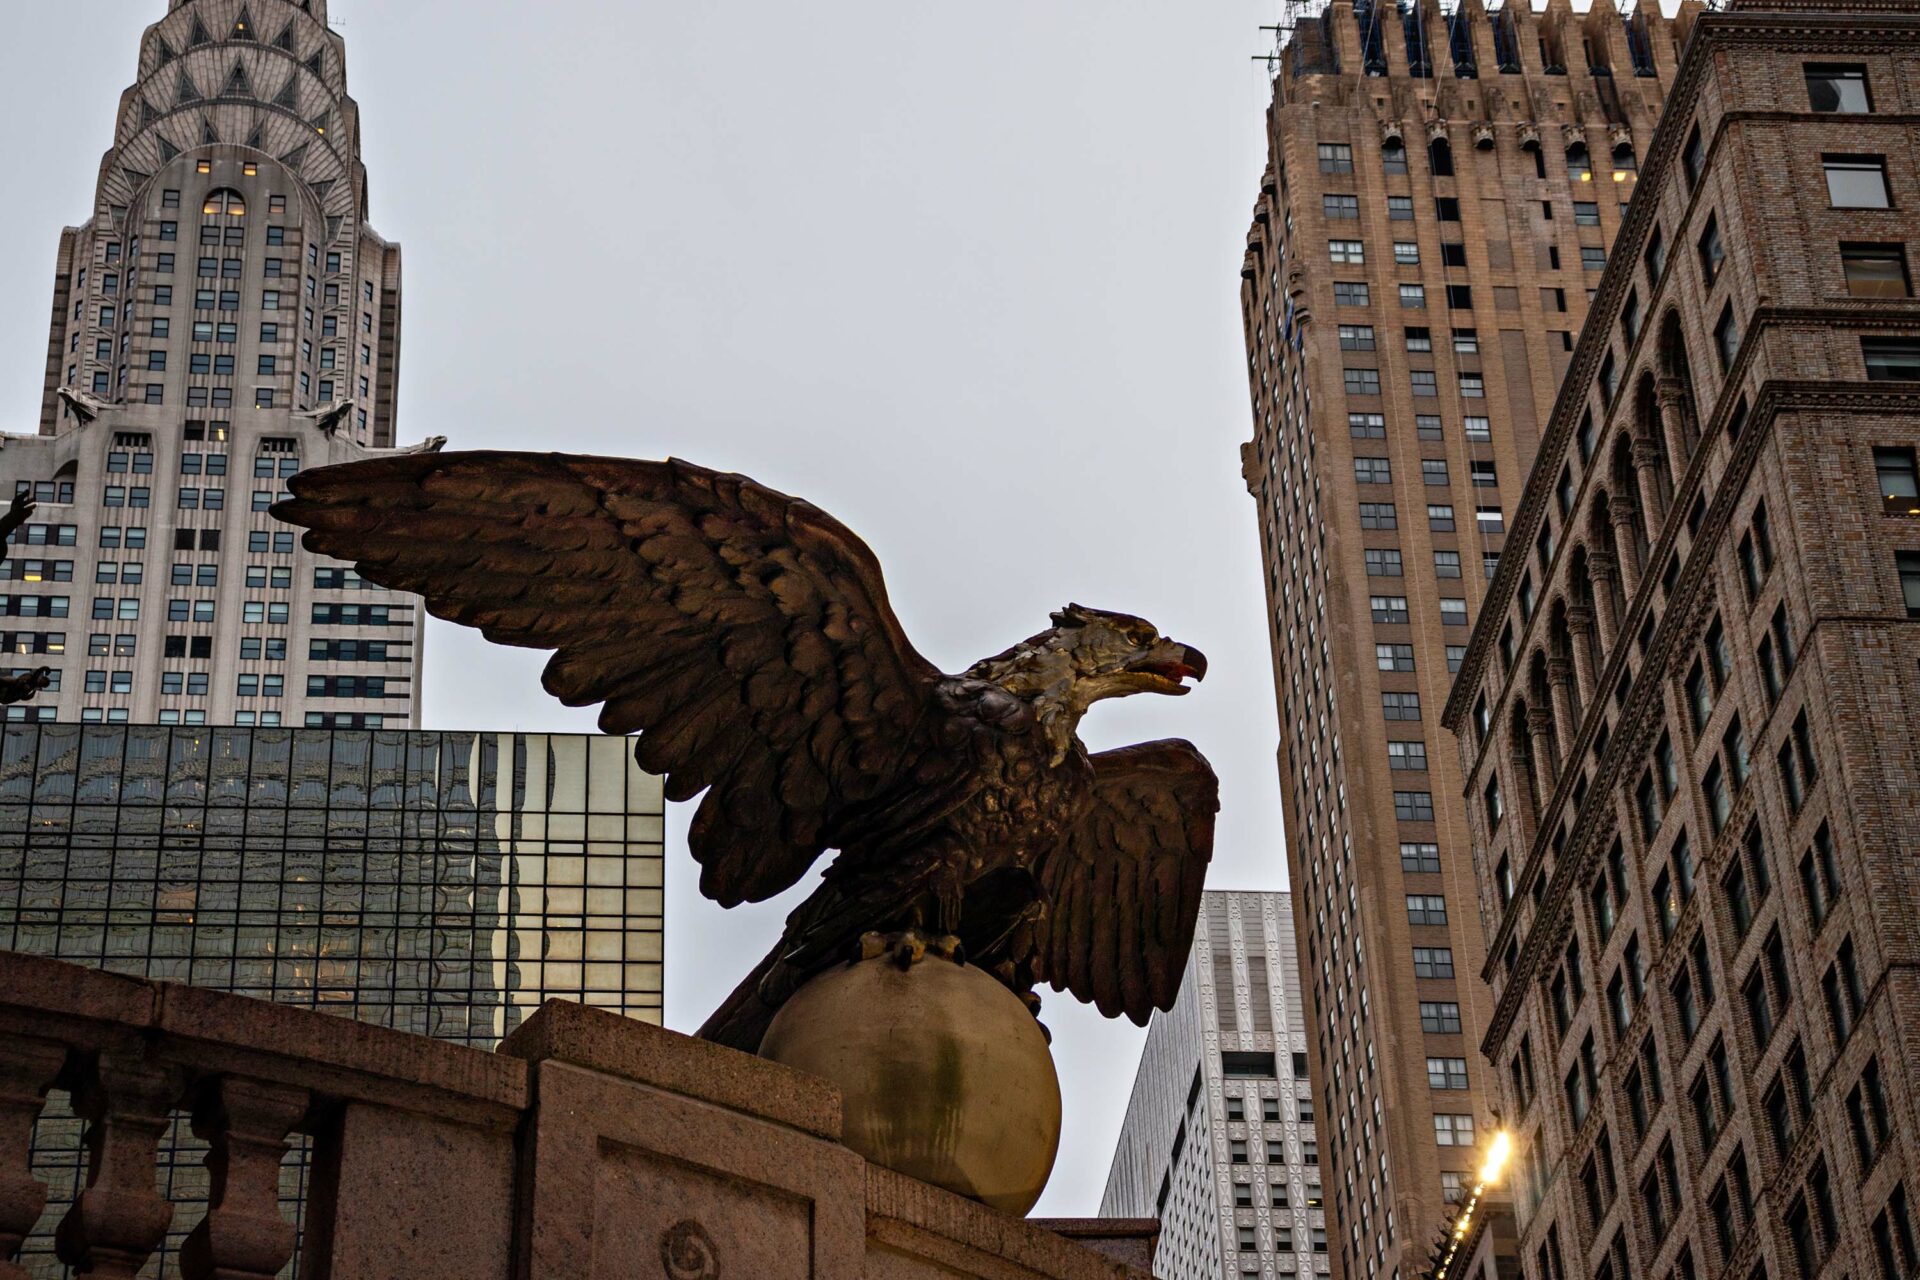 eagle statue in a city